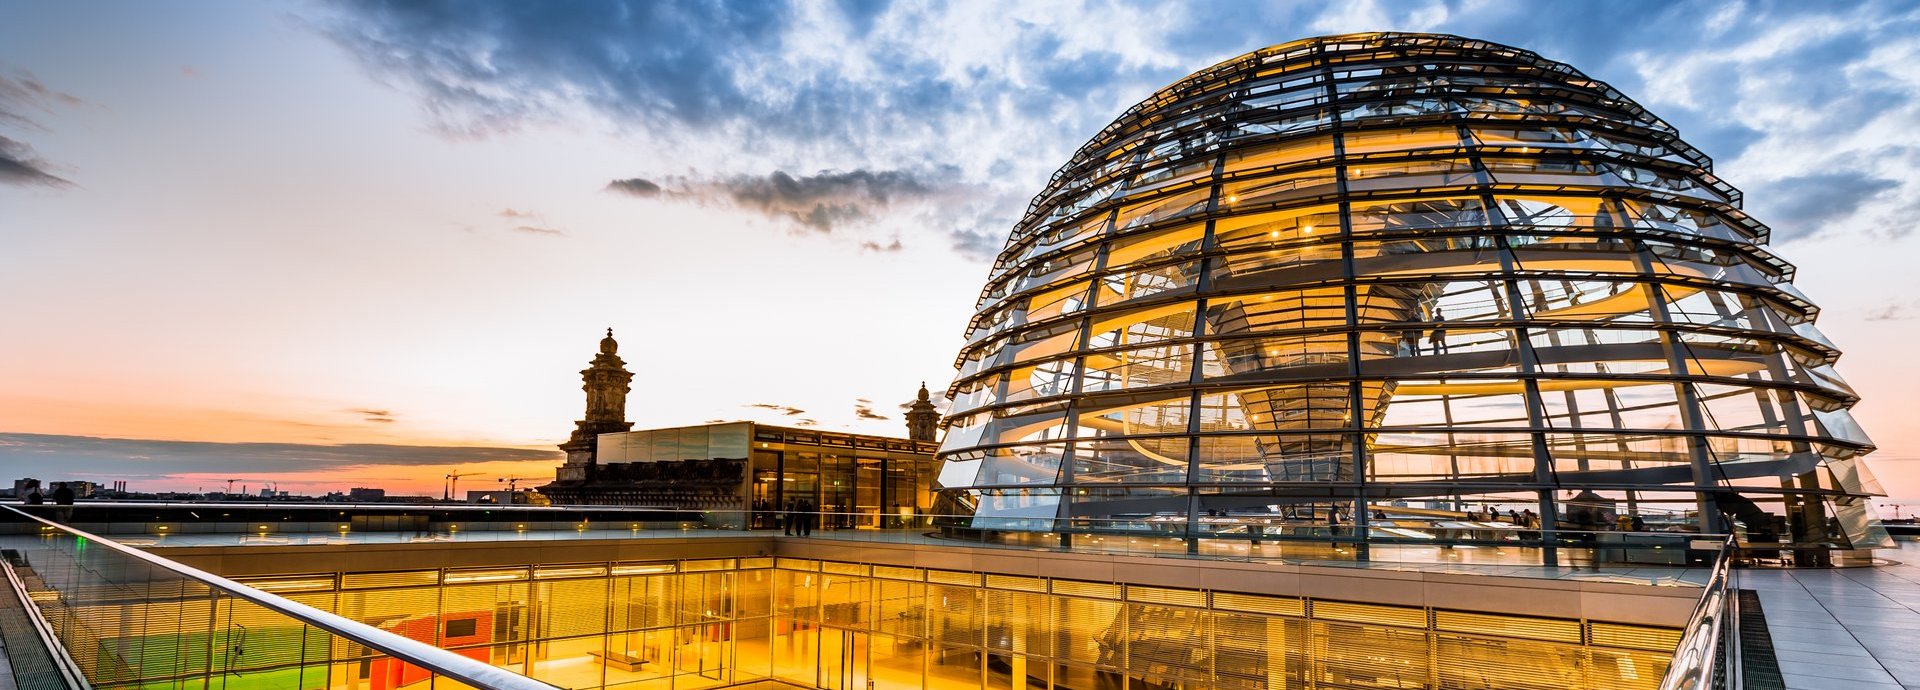 Gelb beleuchtete Kuppel und innere Gänge des Bundestags vor dunkelblauem wolkigem Himmel